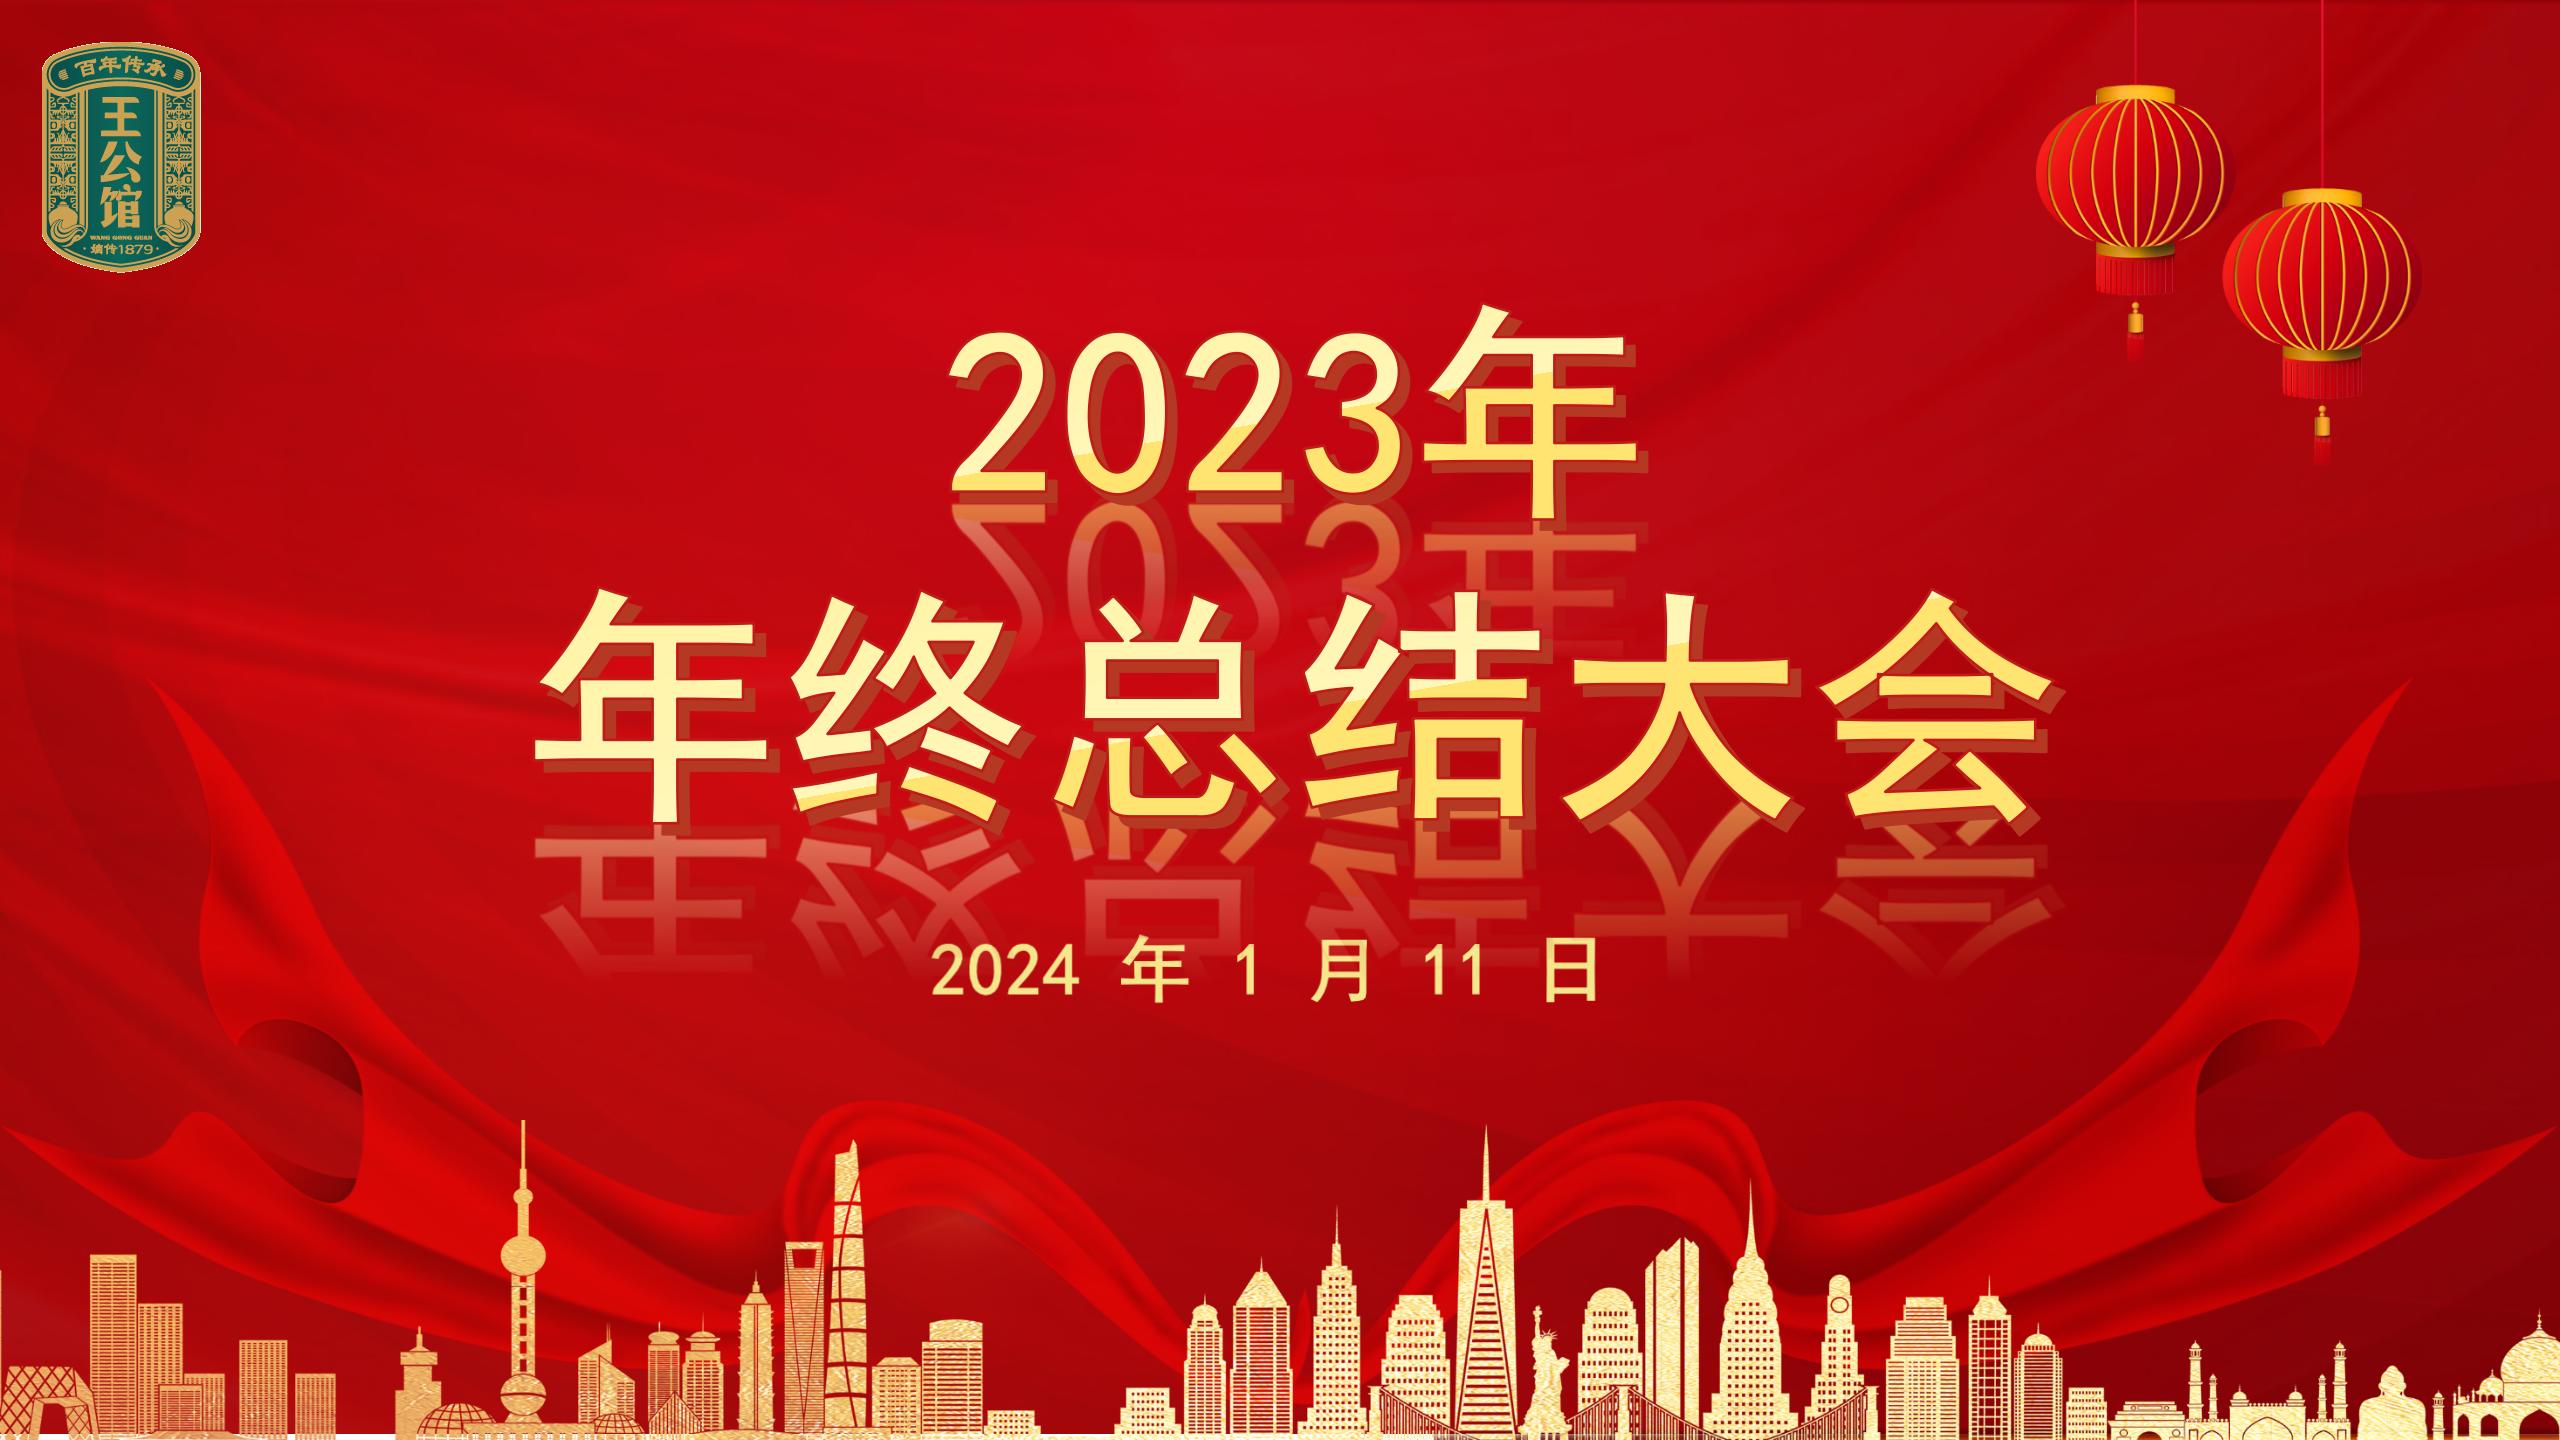 王公馆 2023 年年终总结大会顺利召开